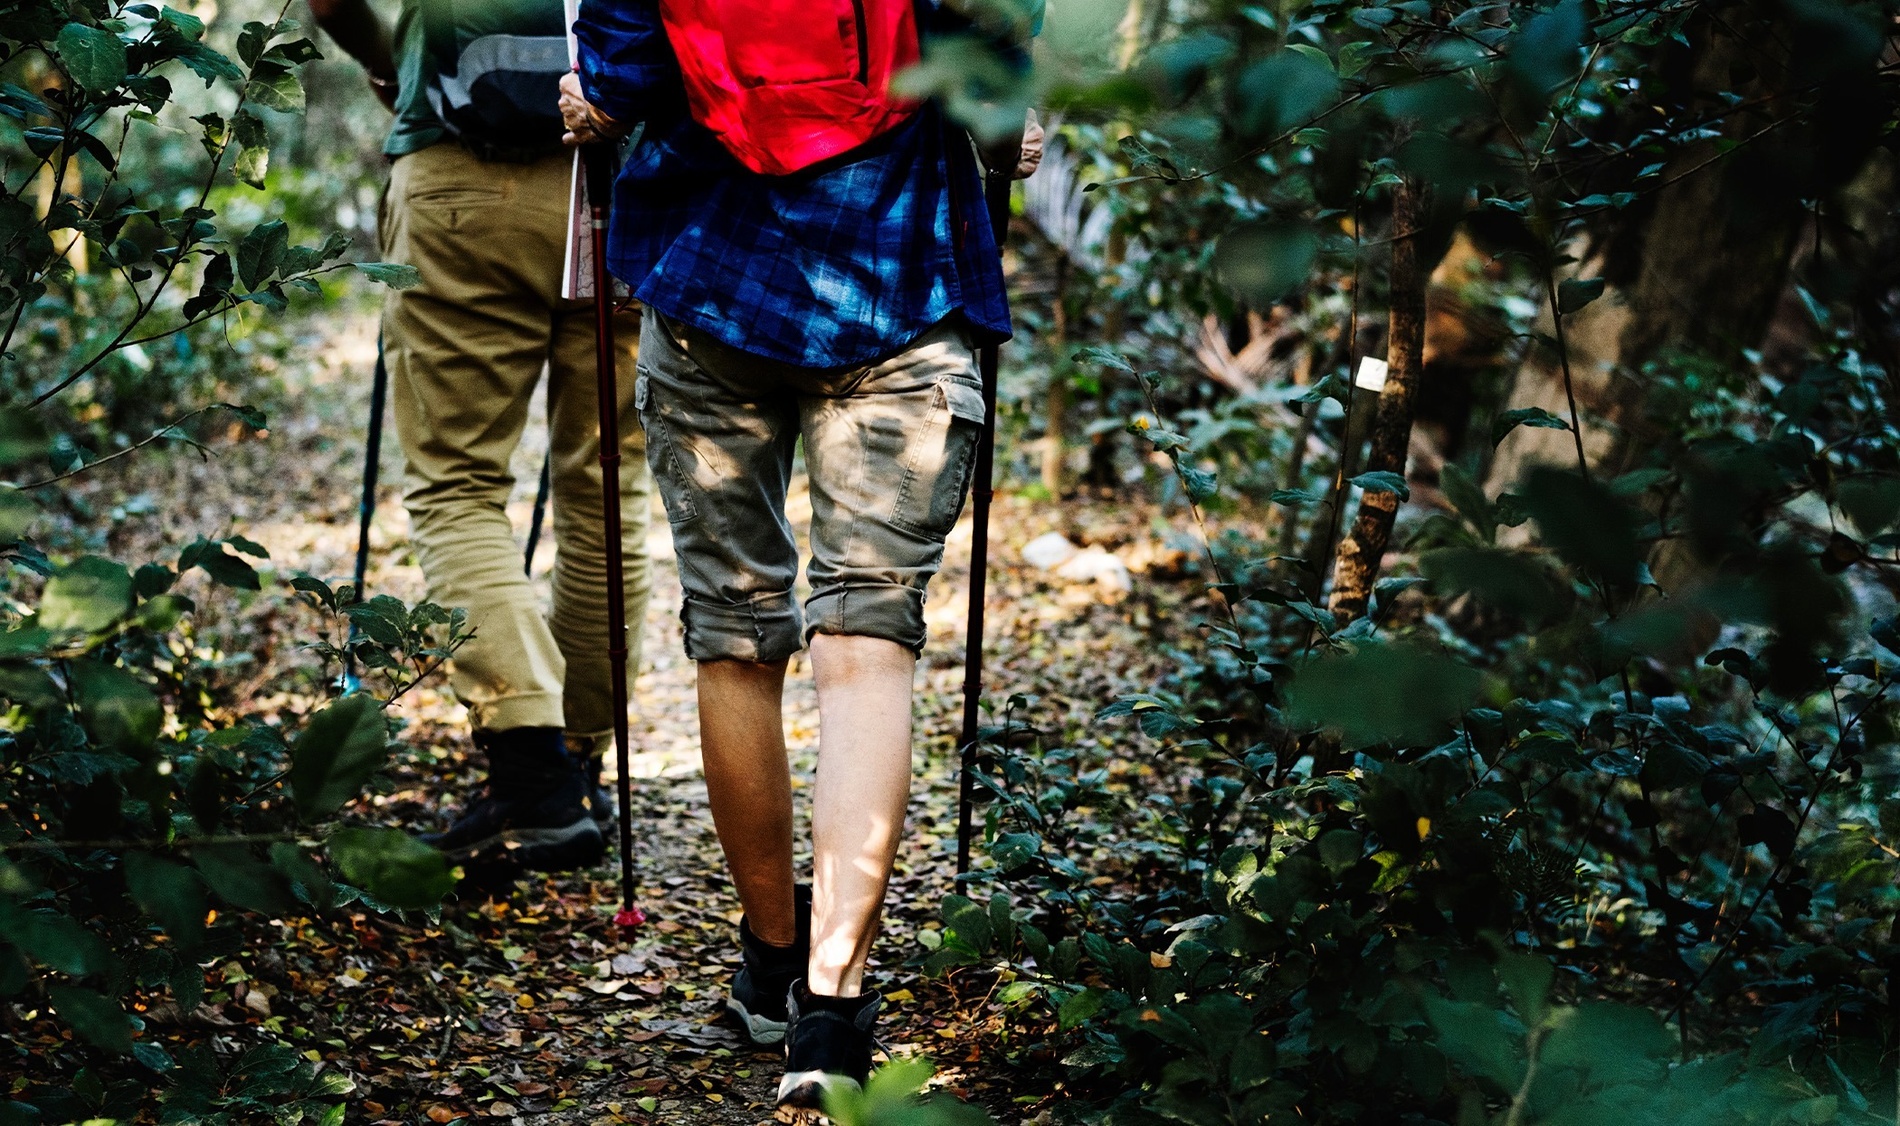 deux personnes marchant dans une forêt avec des bâtons de marche